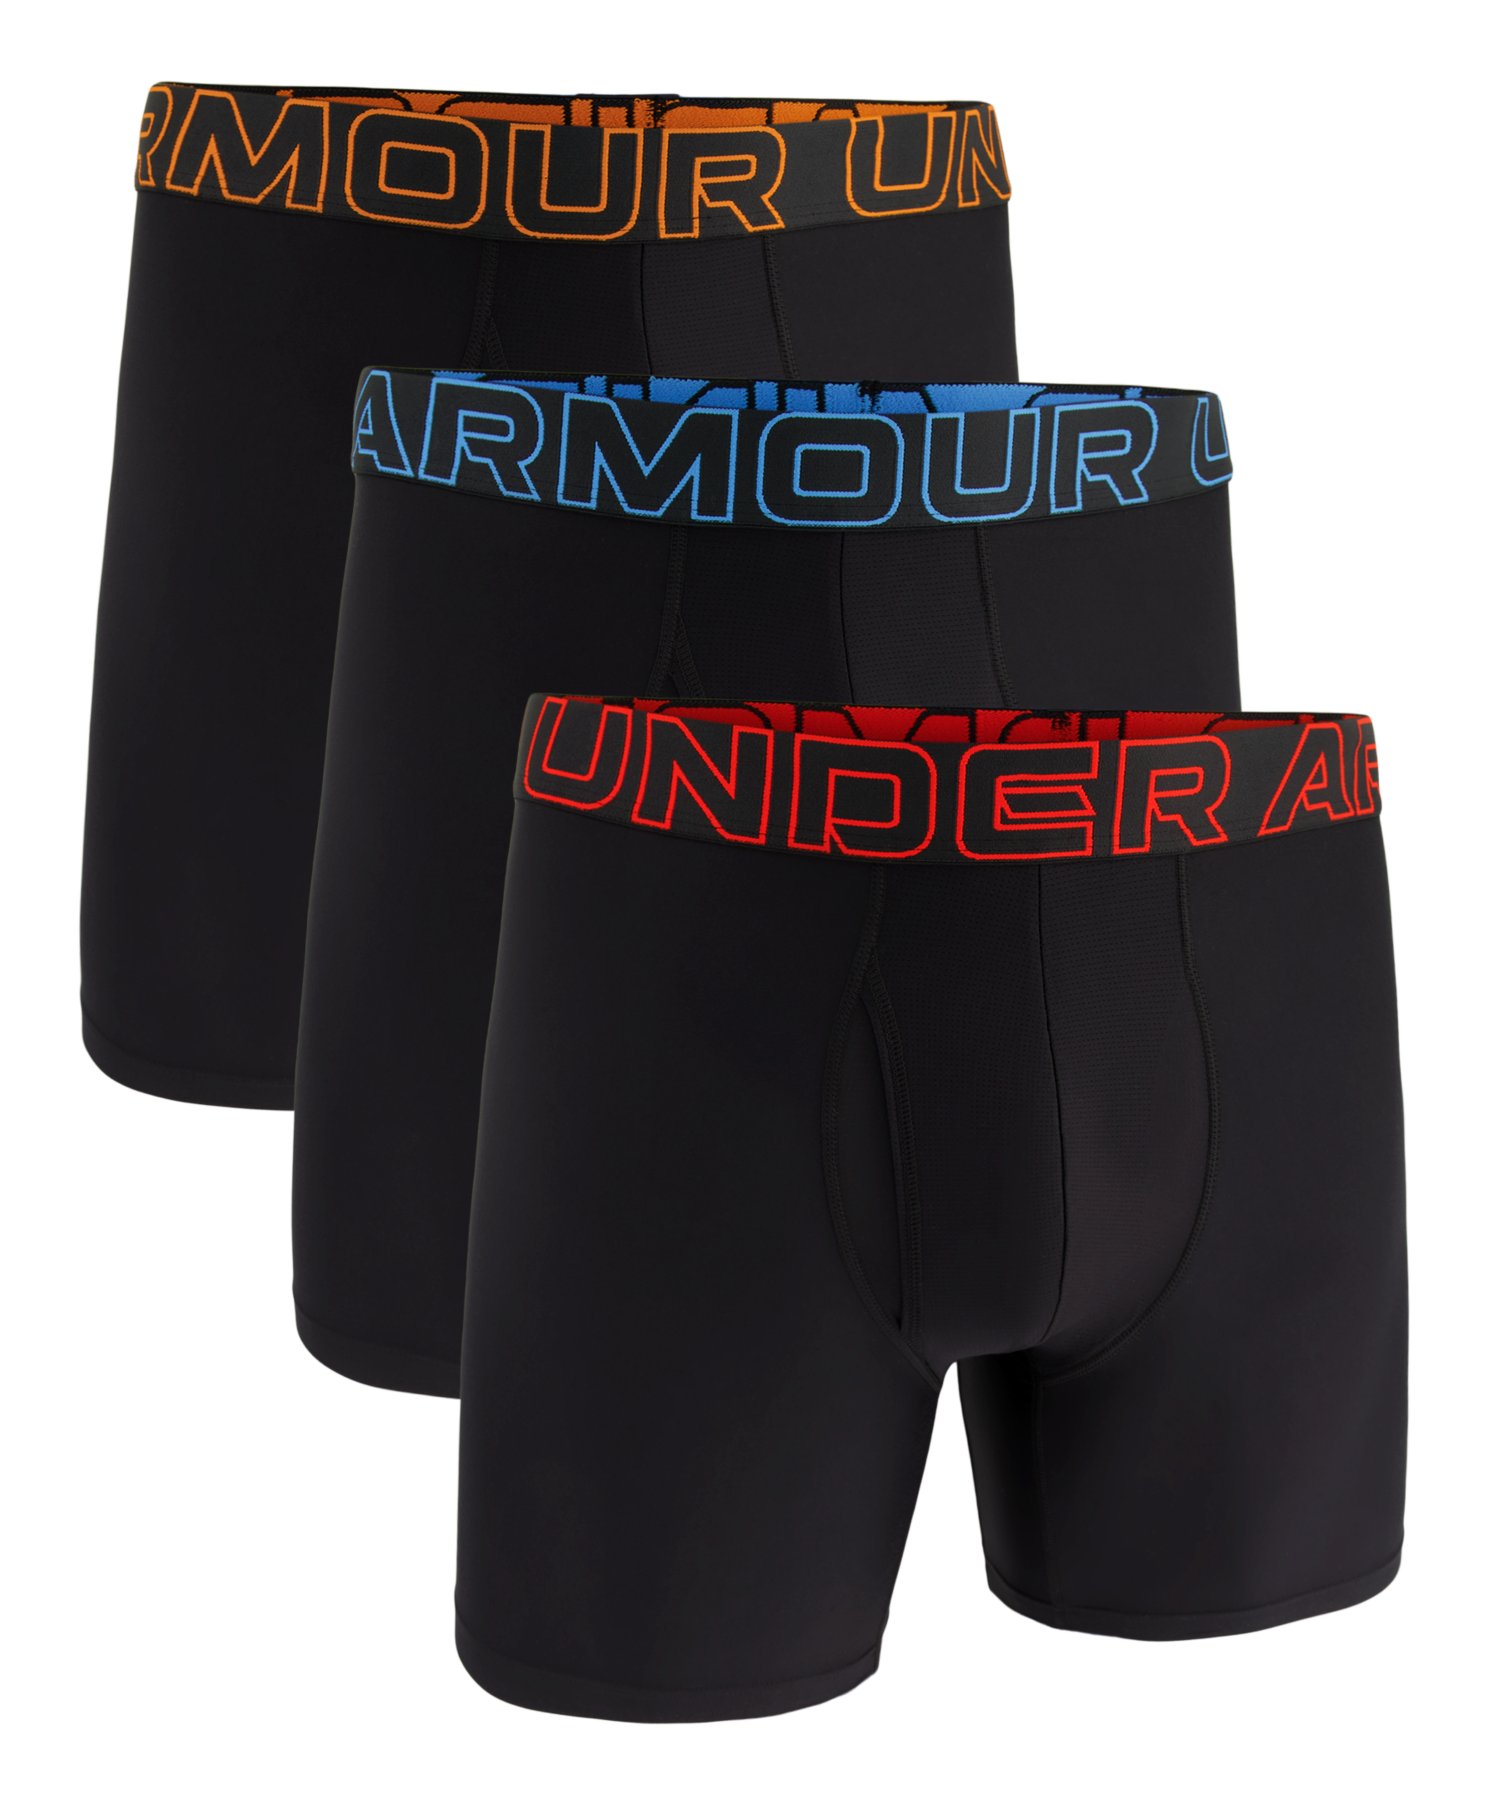  официальный Under Armor UNDER ARMOUR UA UA Performance Tec 6 дюймовый нижний одежда (3 шт. комплект )( тренировка |MEN) 1387414